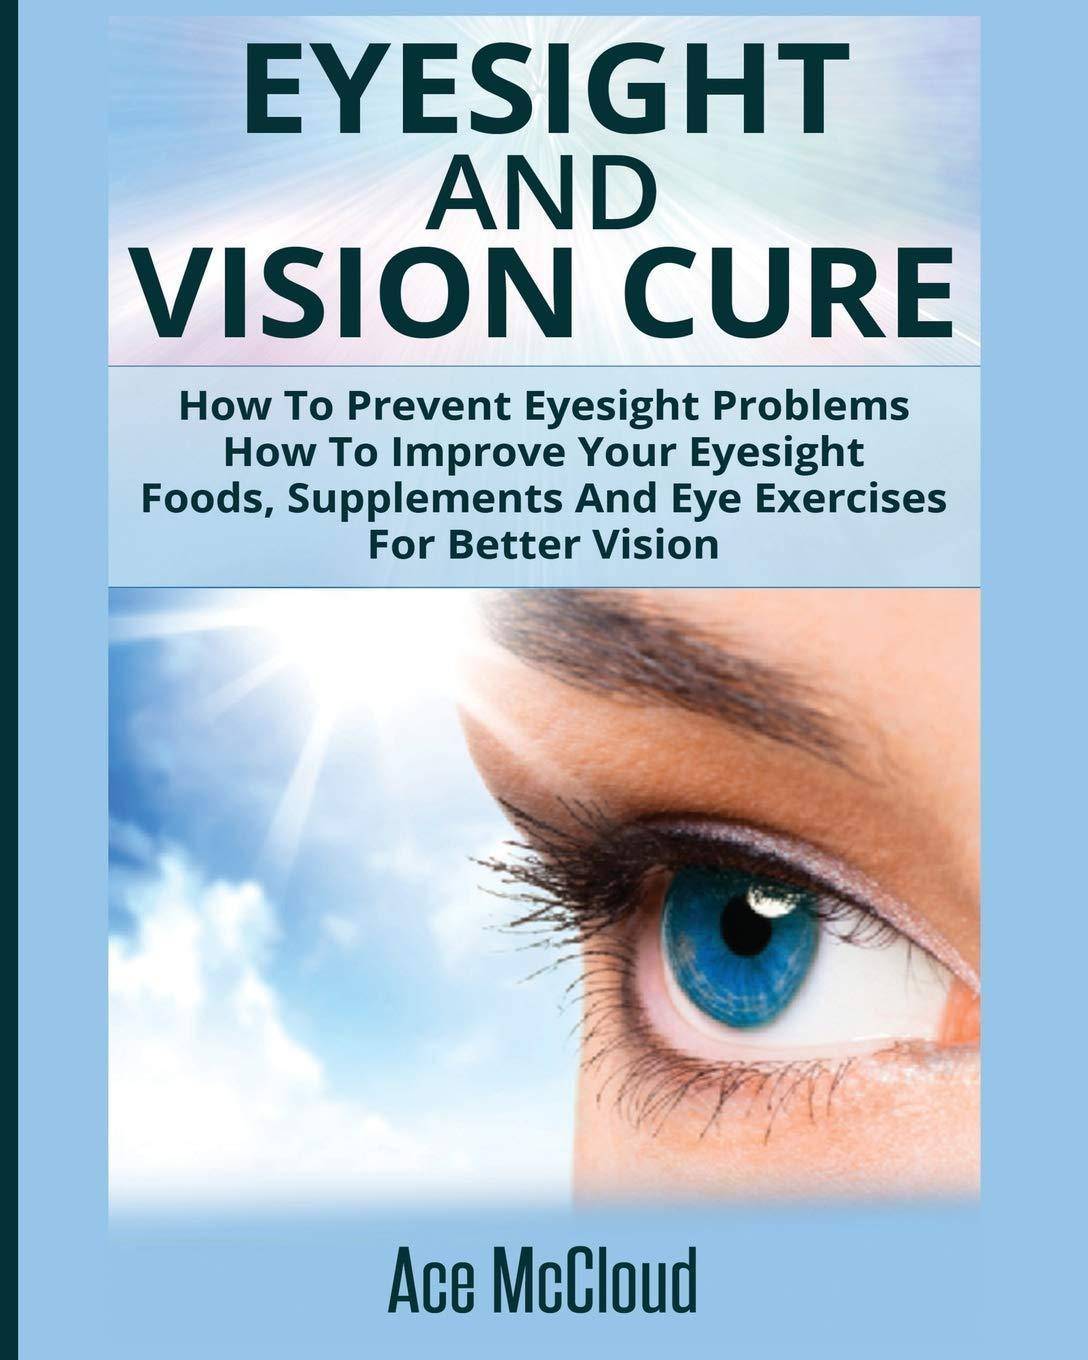 Eyesight And Vision Cure - SureShot Books Publishing LLC